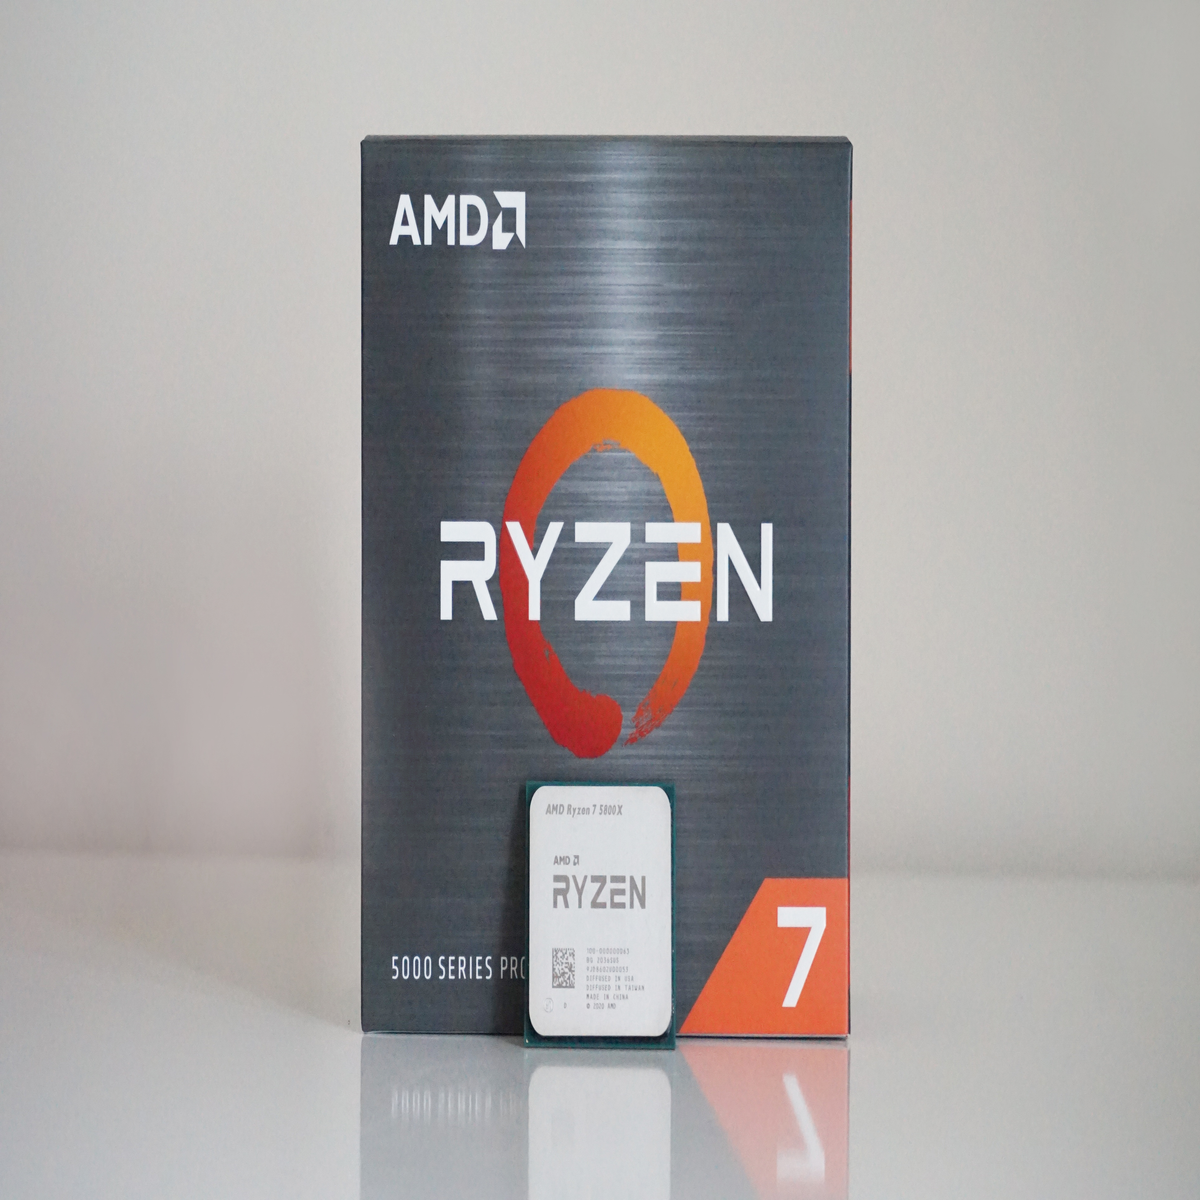 AMD Ryzen 7 3700X vs Ryzen 7 5800X: Which offers better value for